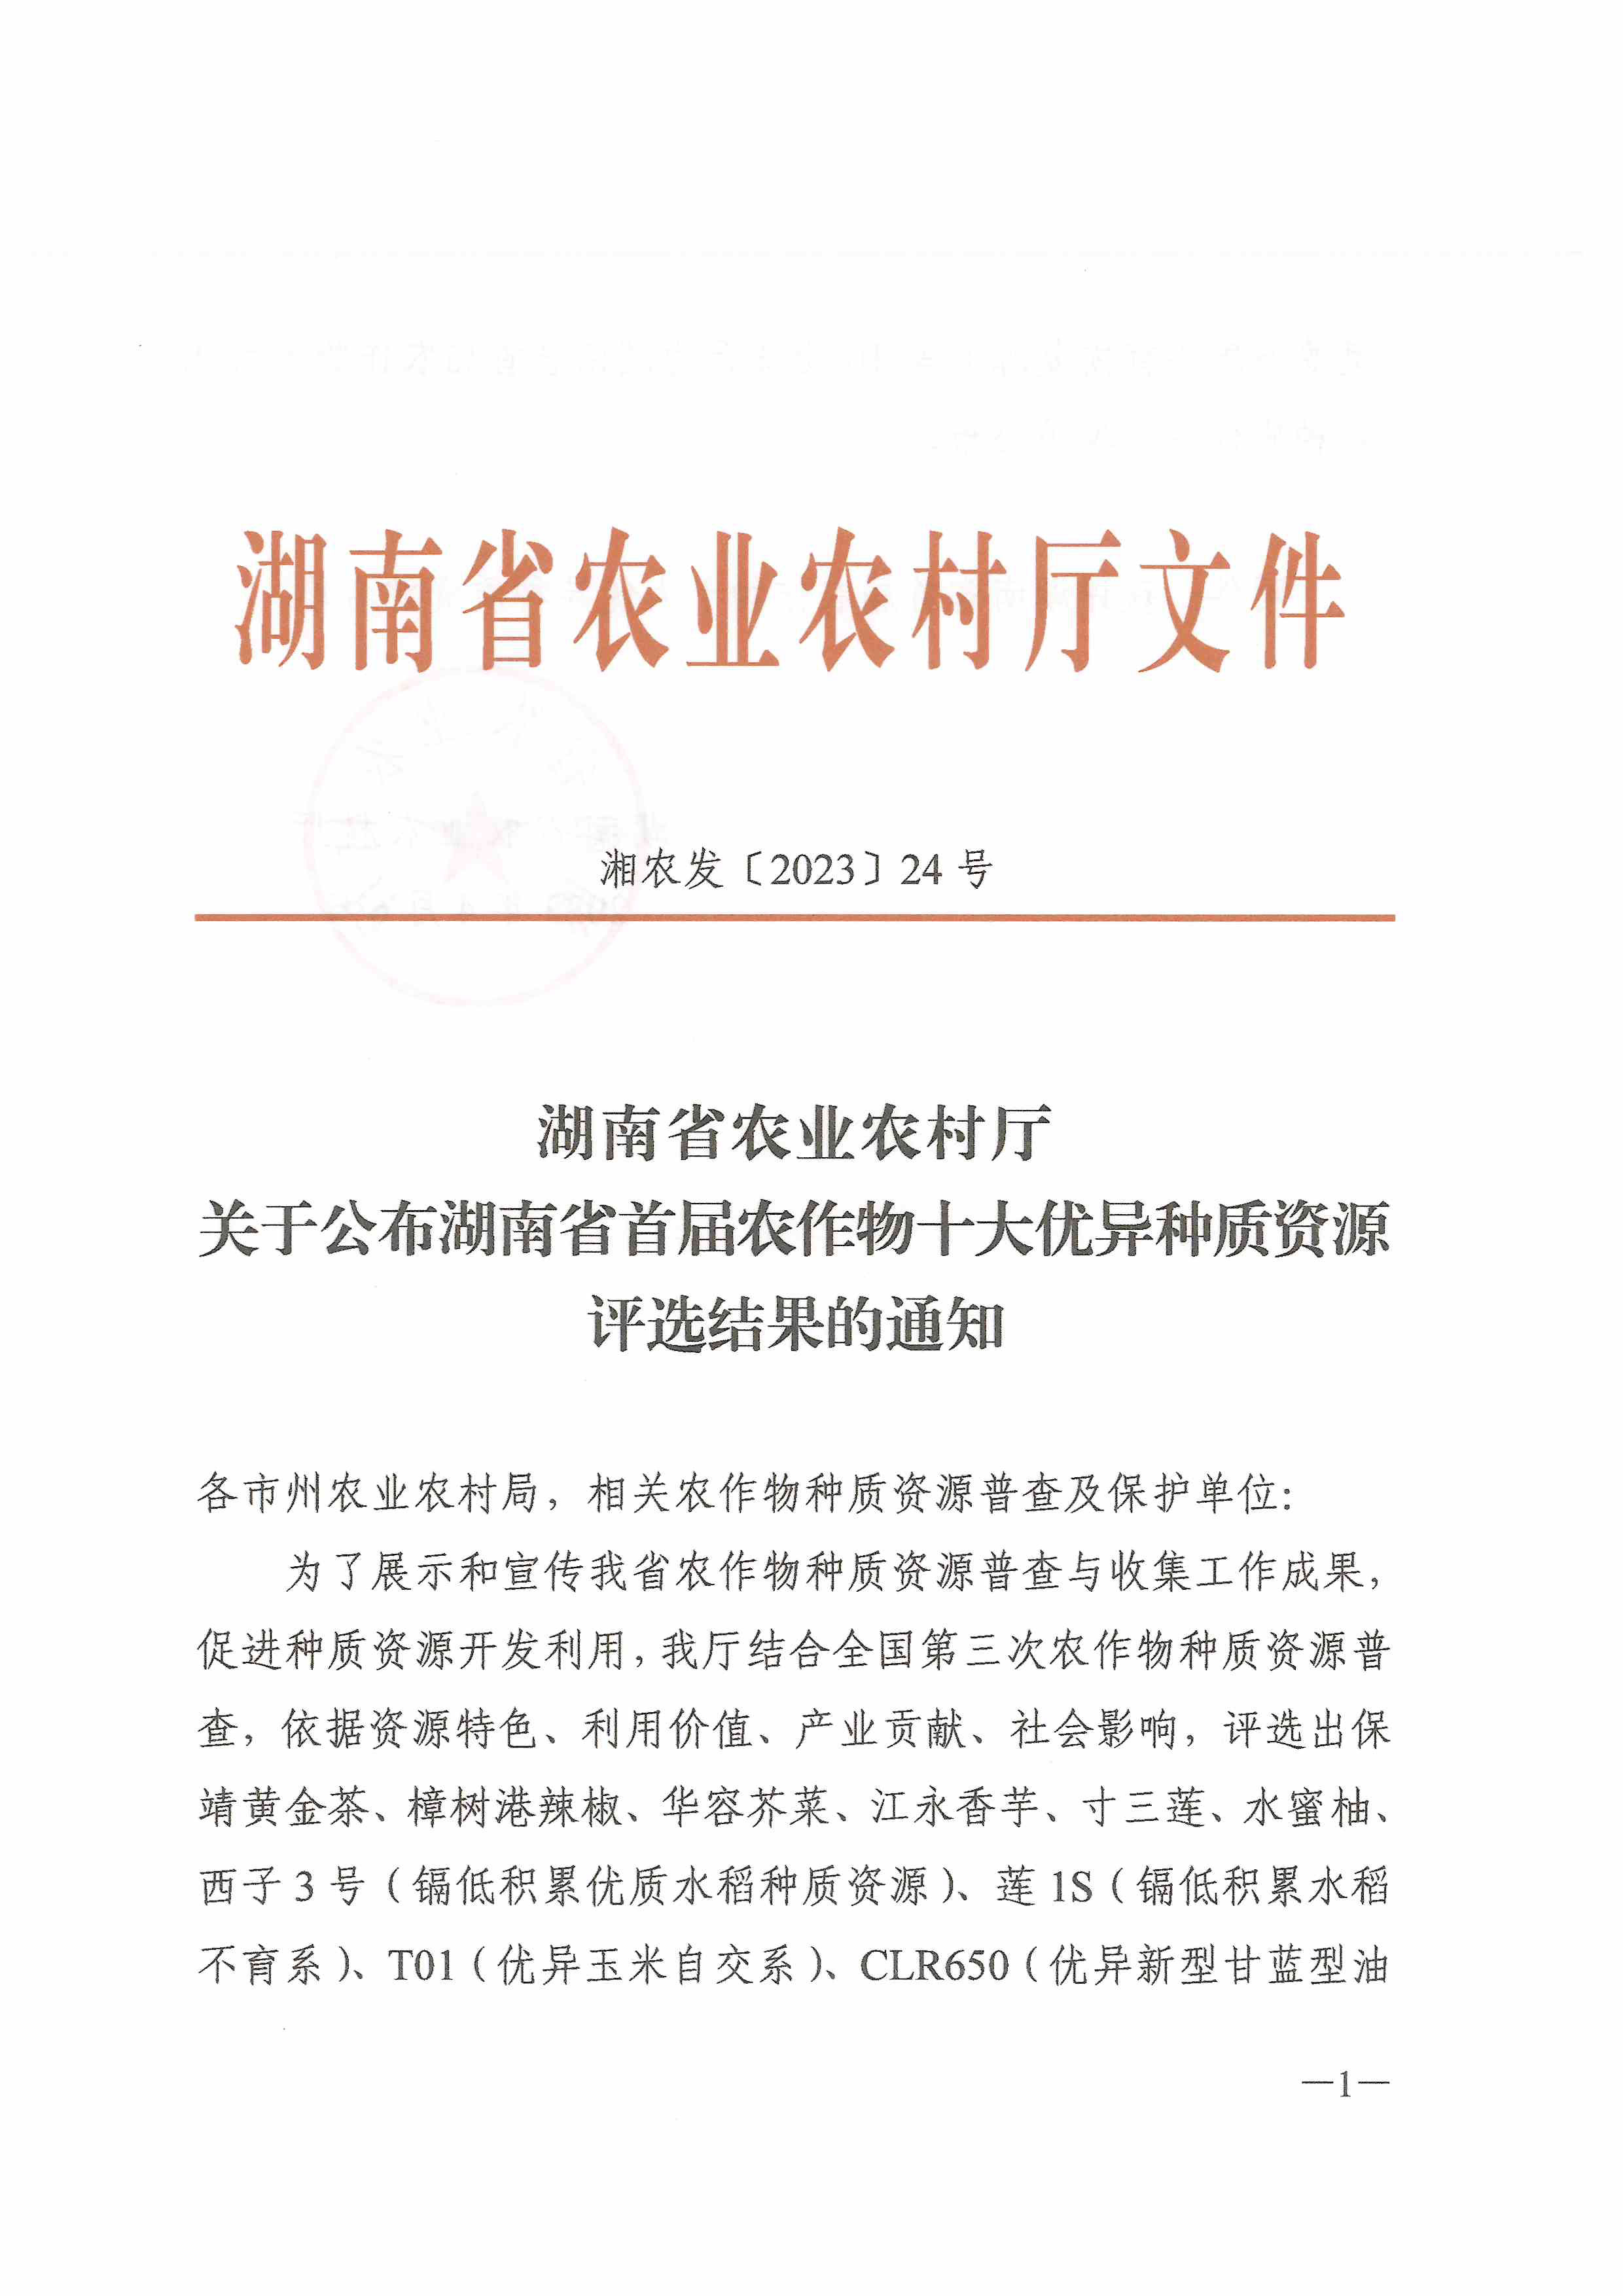 关于公布湖南省首届农作物十大优异种质资源评选结果的通知-1.jpg